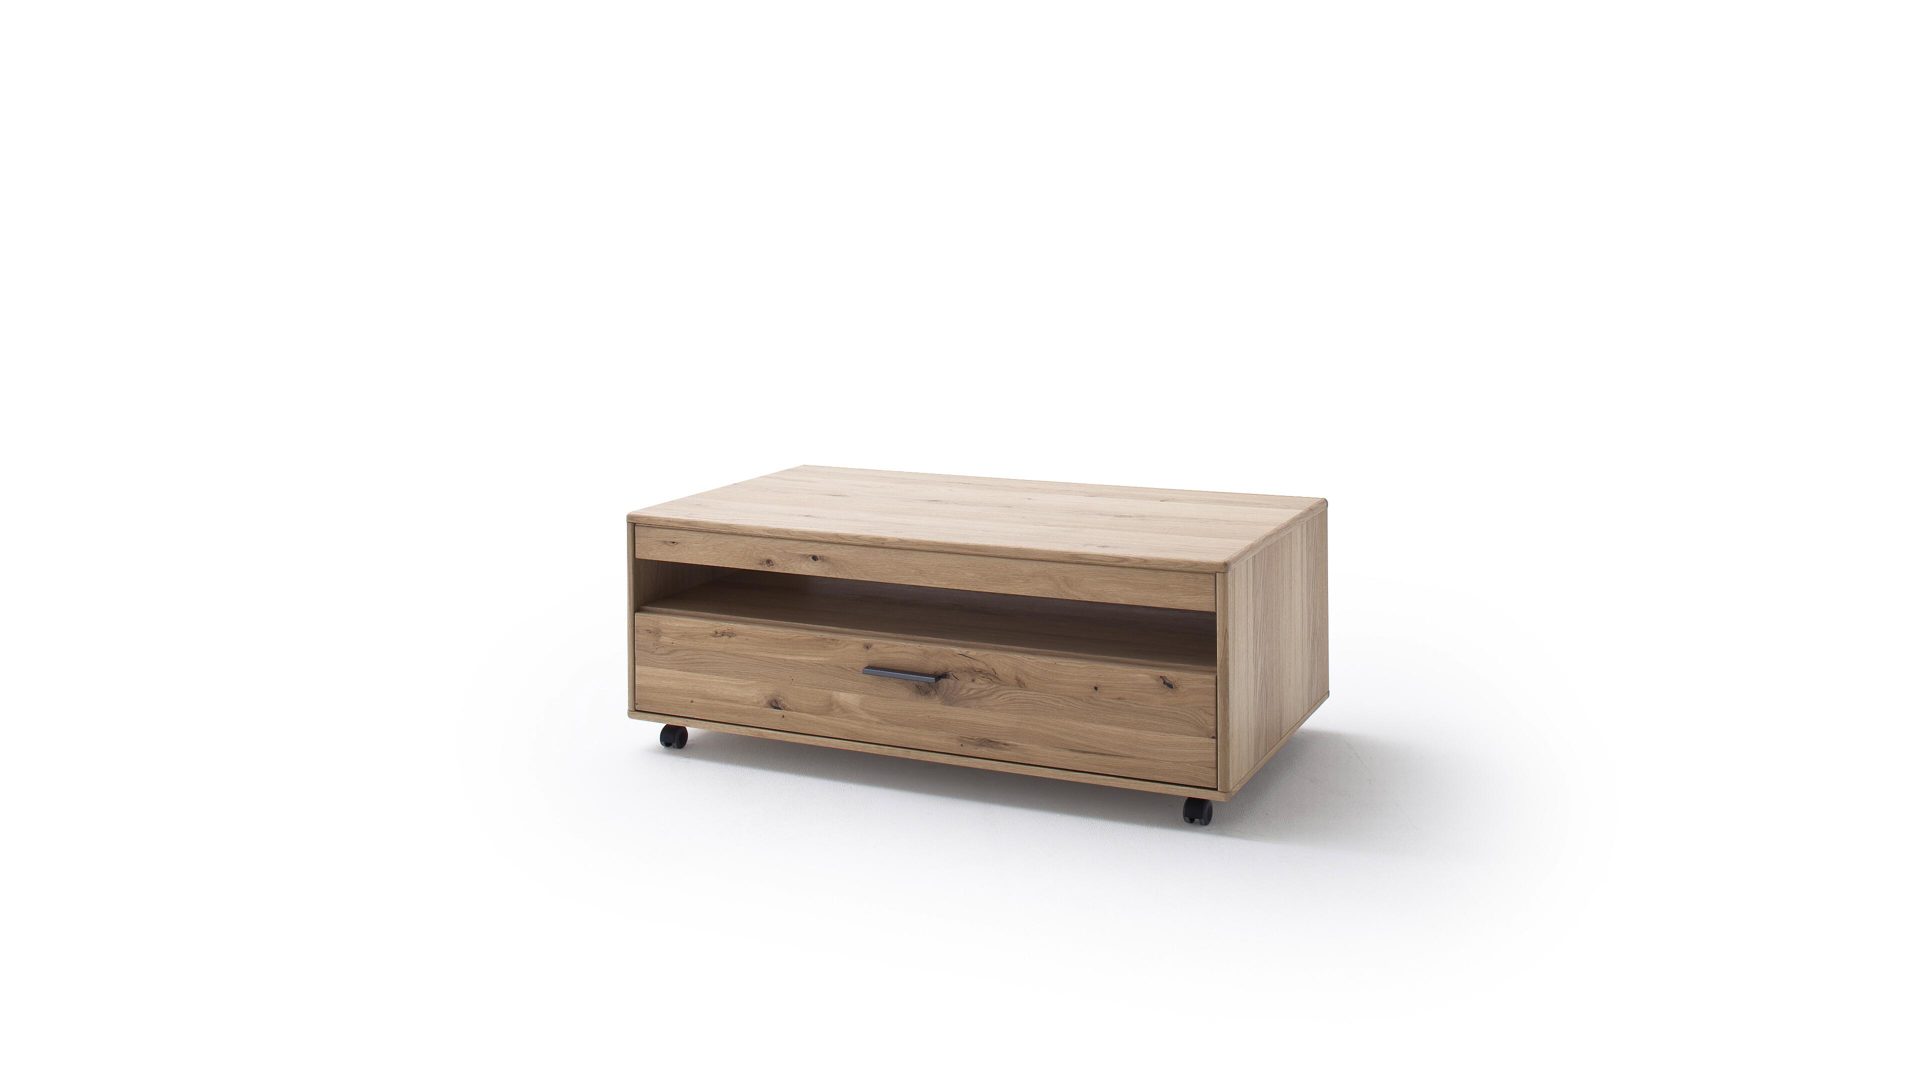 Couchtisch Mca furniture aus Holz in Holzfarben Couchtisch Bianco geölte Asteiche – ca. 115 x 65 cm